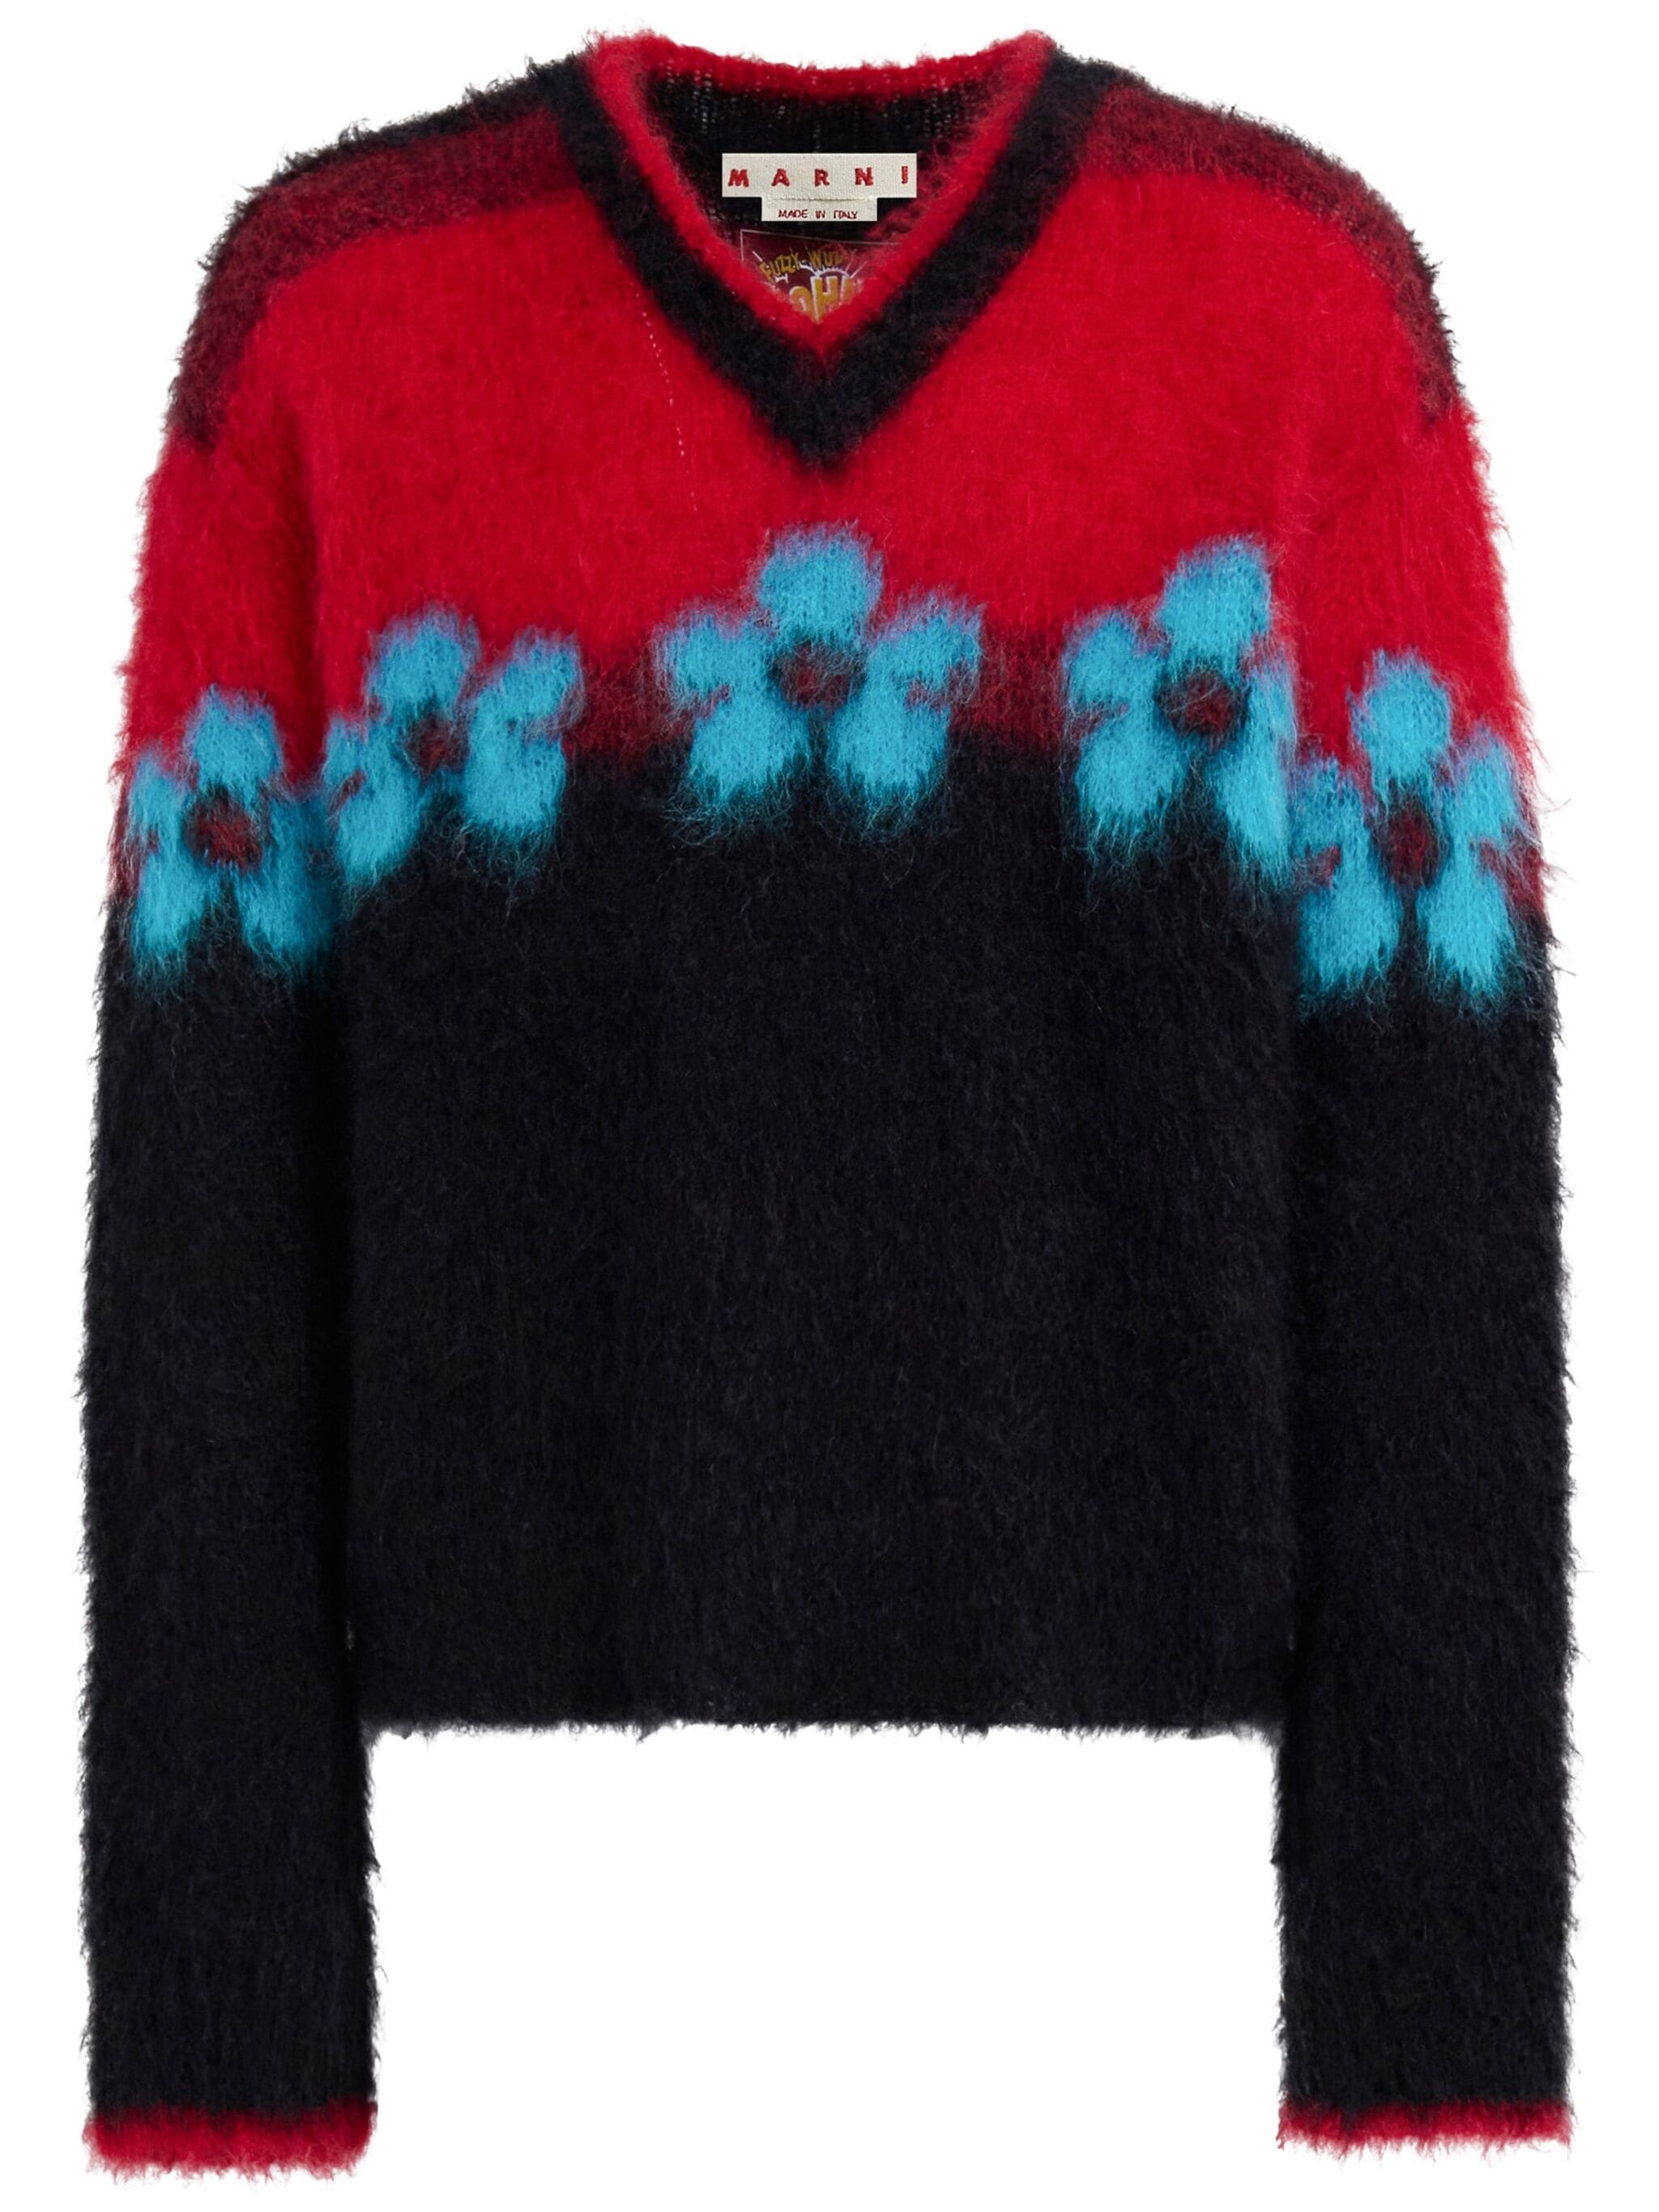 MARNI Men V-Neck Floral Pattern Sweater - 5